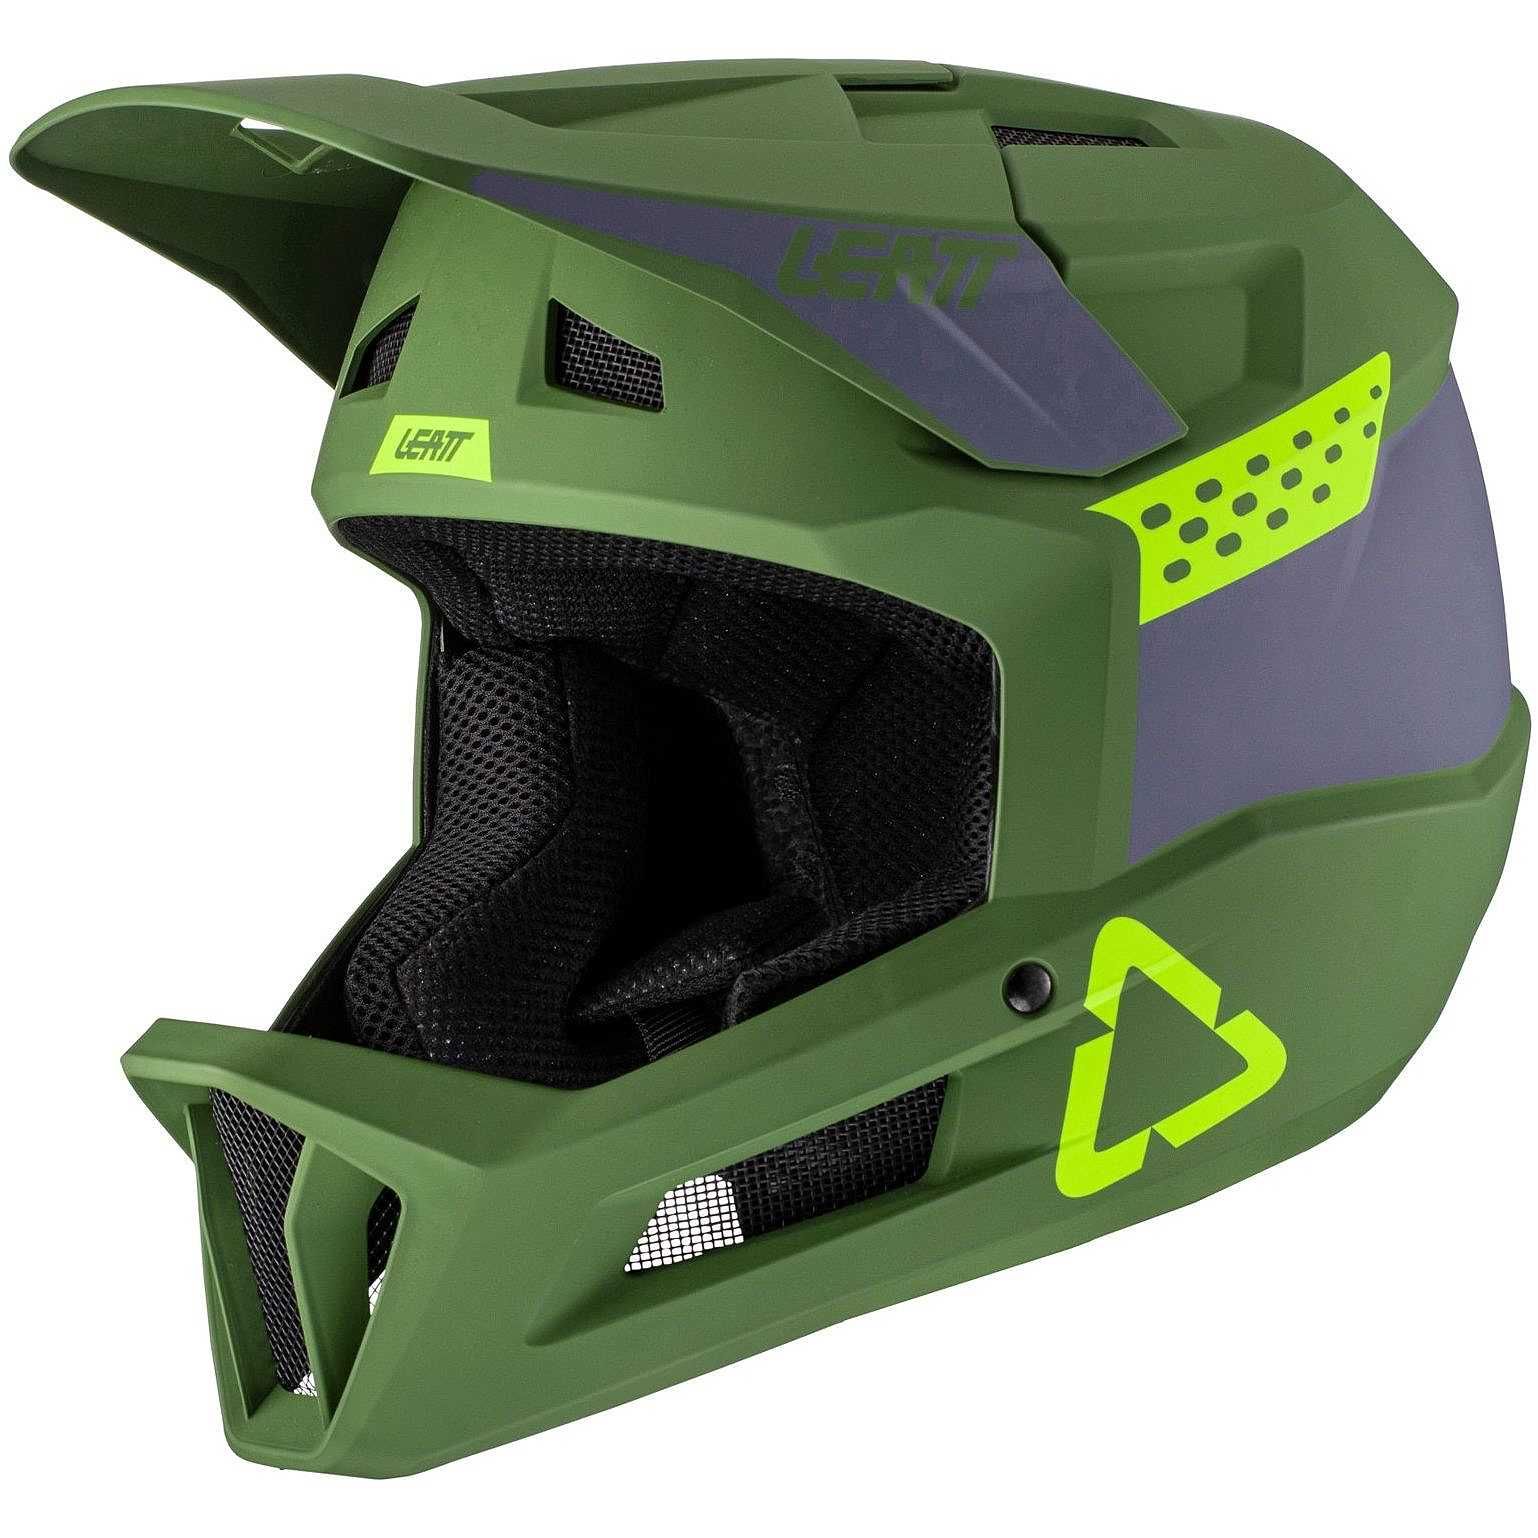 Helmet MTB 1.0 DH V21.1 Cactus